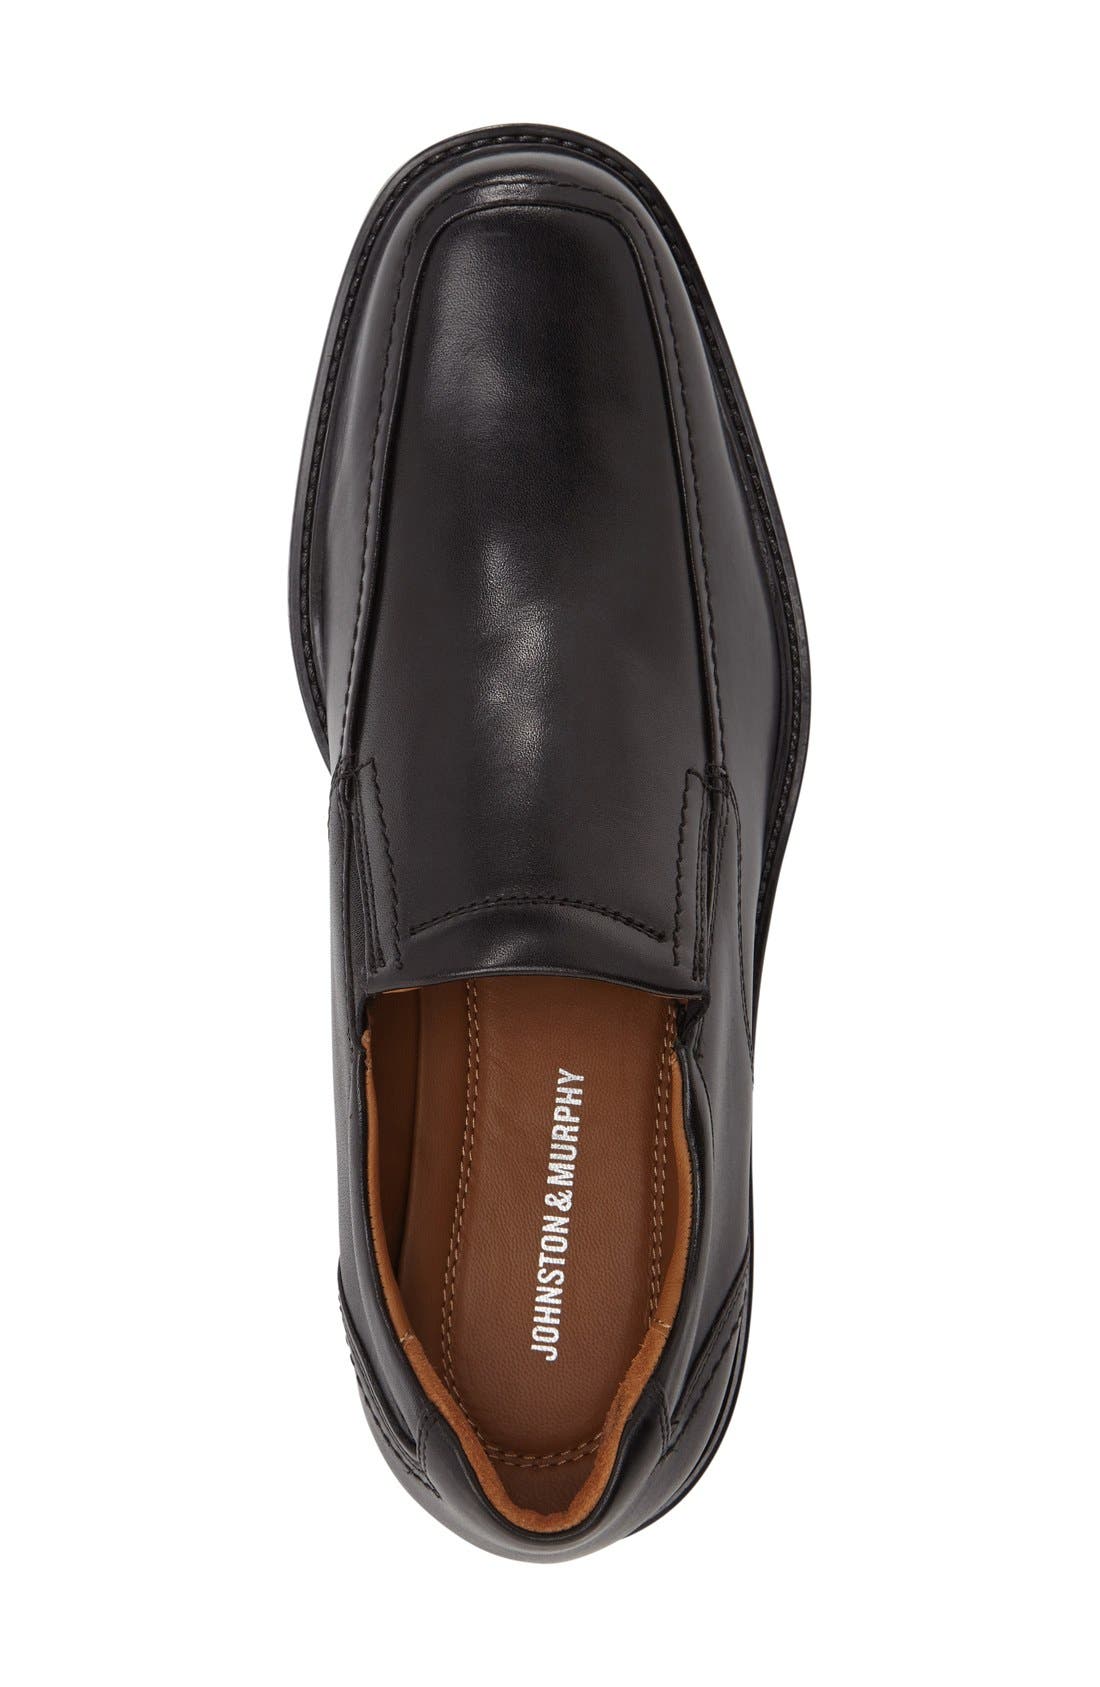 JOHNSTON & MURPHY  Tabor Venetian Loafer Slip On Calfskin Size 12 Med 